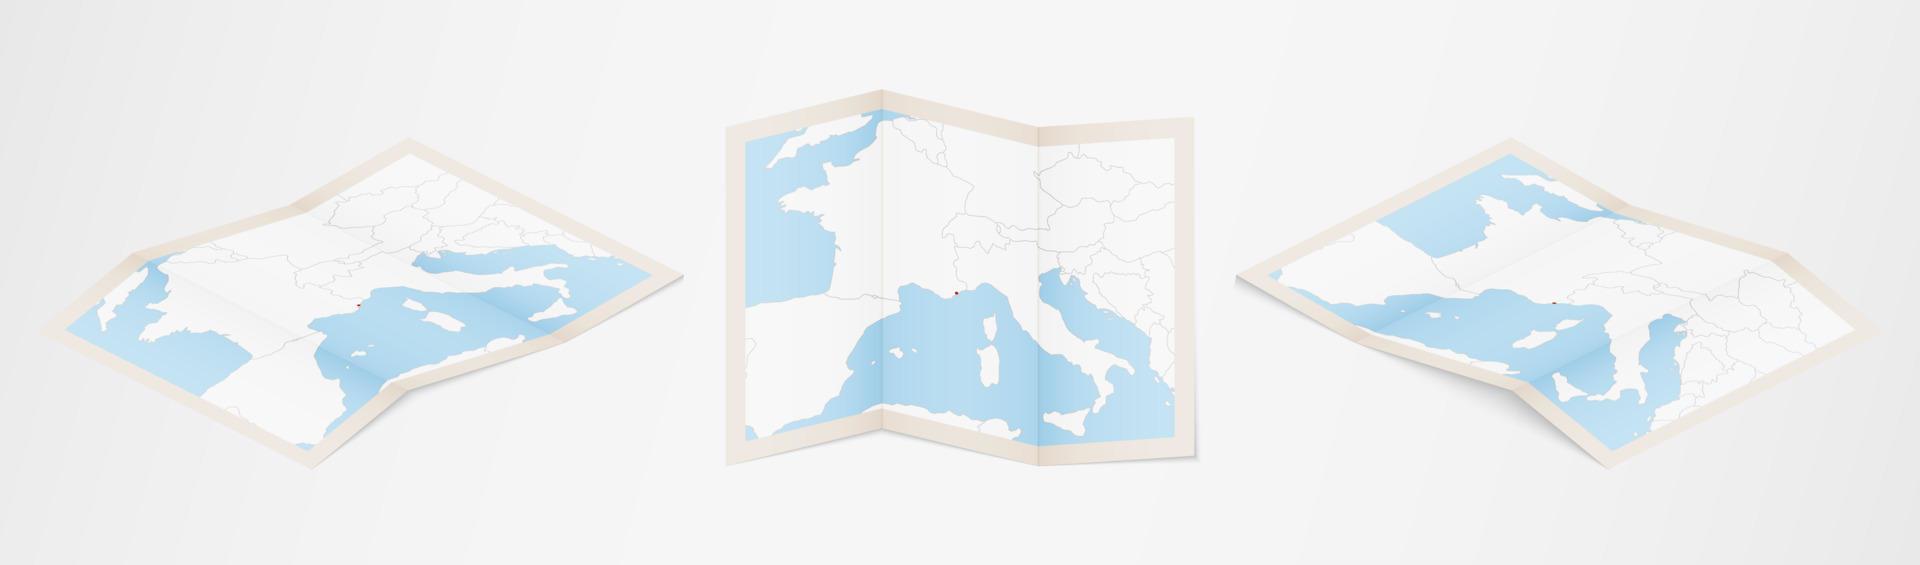 gevouwen kaart van Monaco in drie verschillend versies. vector